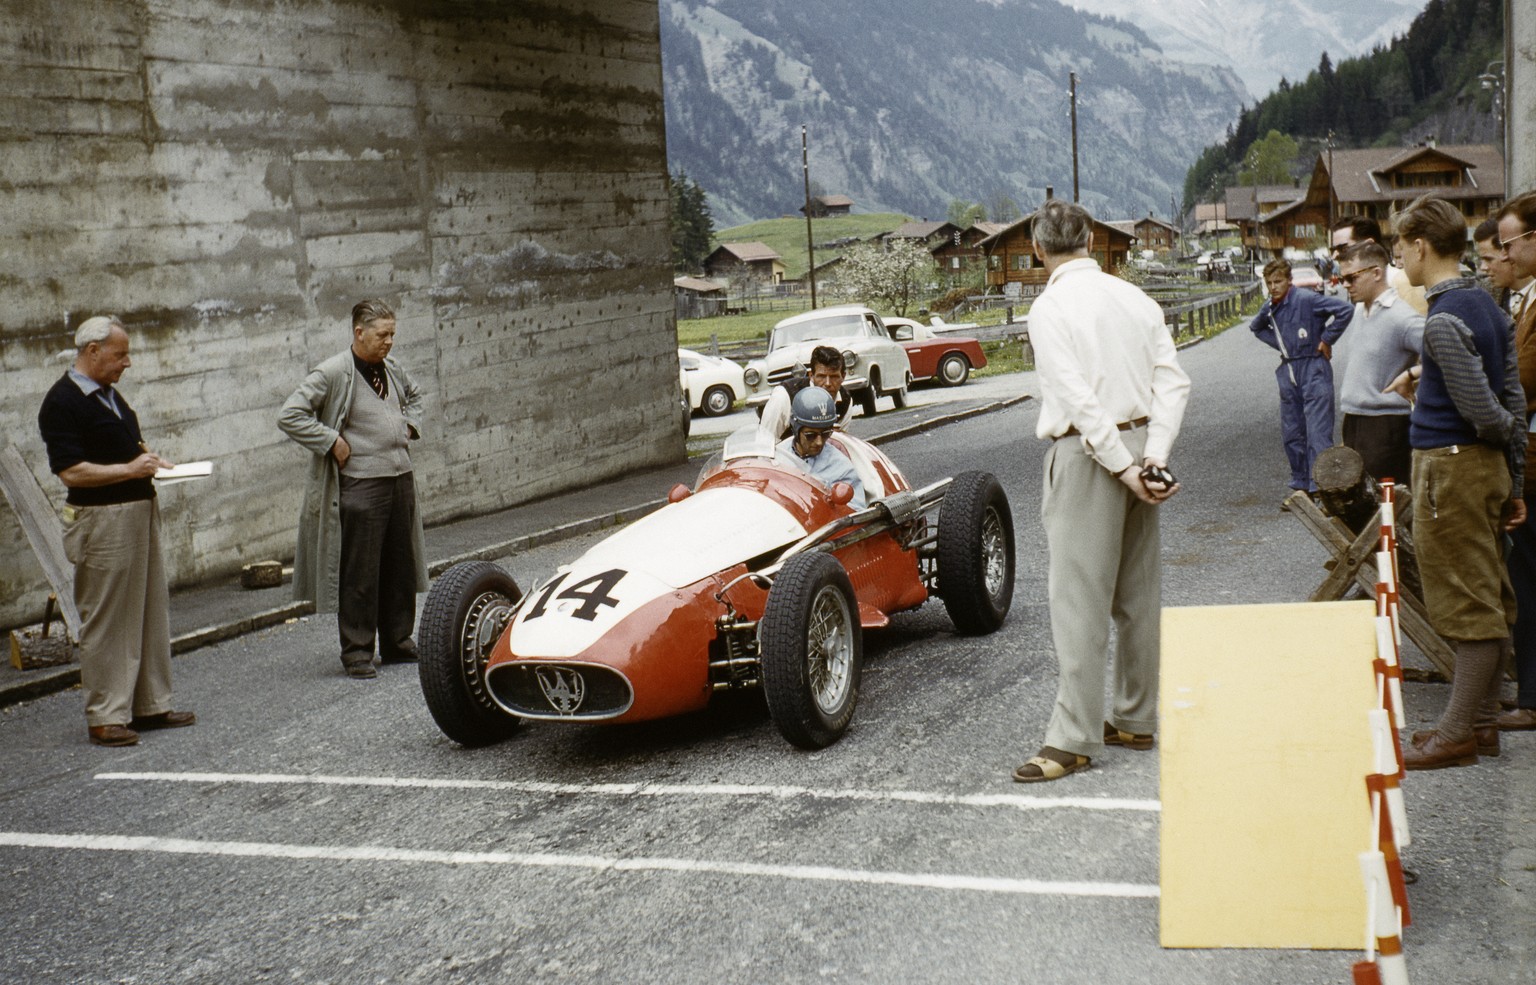 1959, Kandersteg, Nationales Bergrennen: Erwin Sommerhalder an der Startlinie in seinem Maserati 250F.